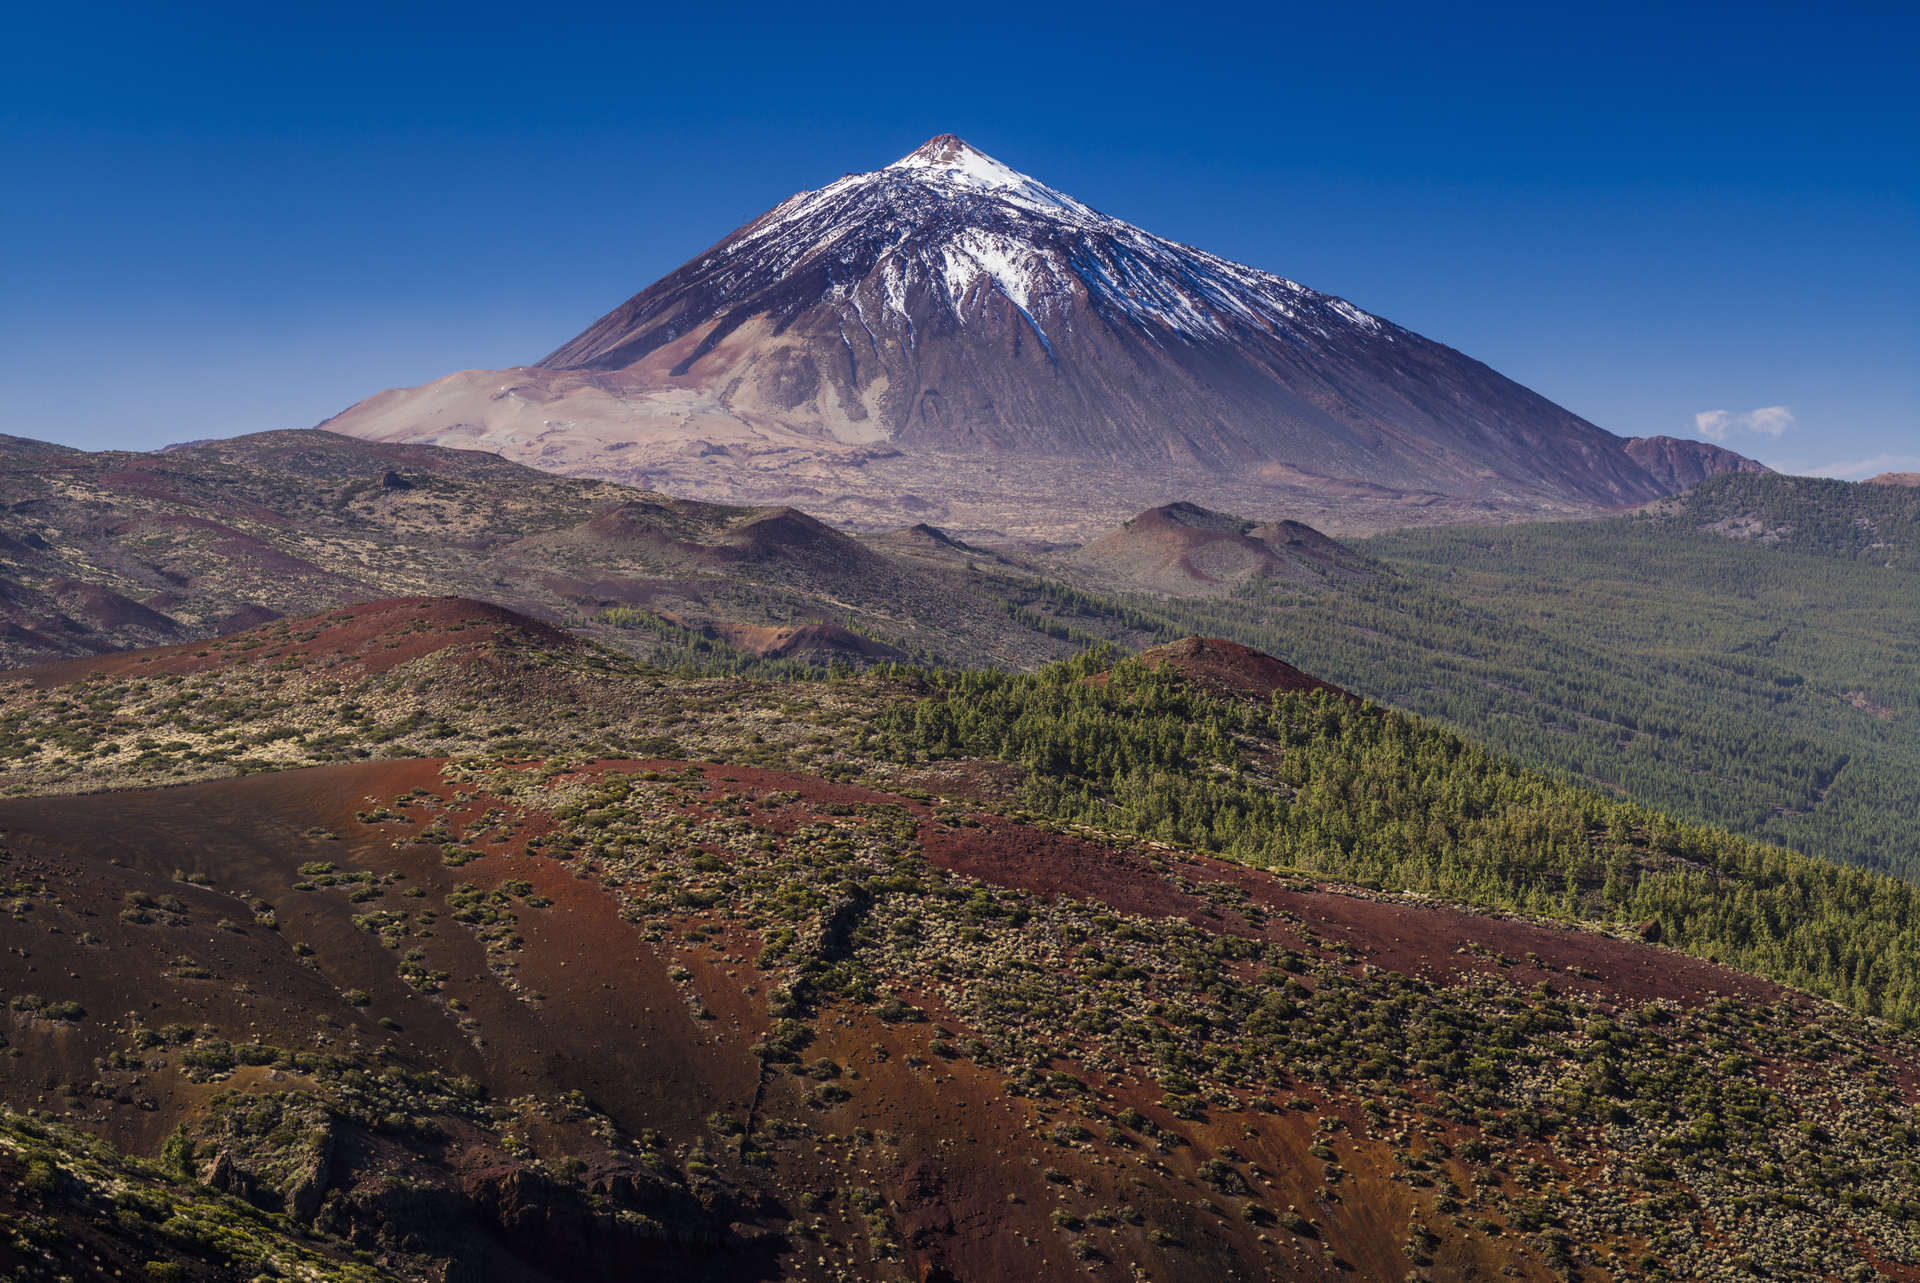  Valle de la Orotava, view of the Pico del Teide